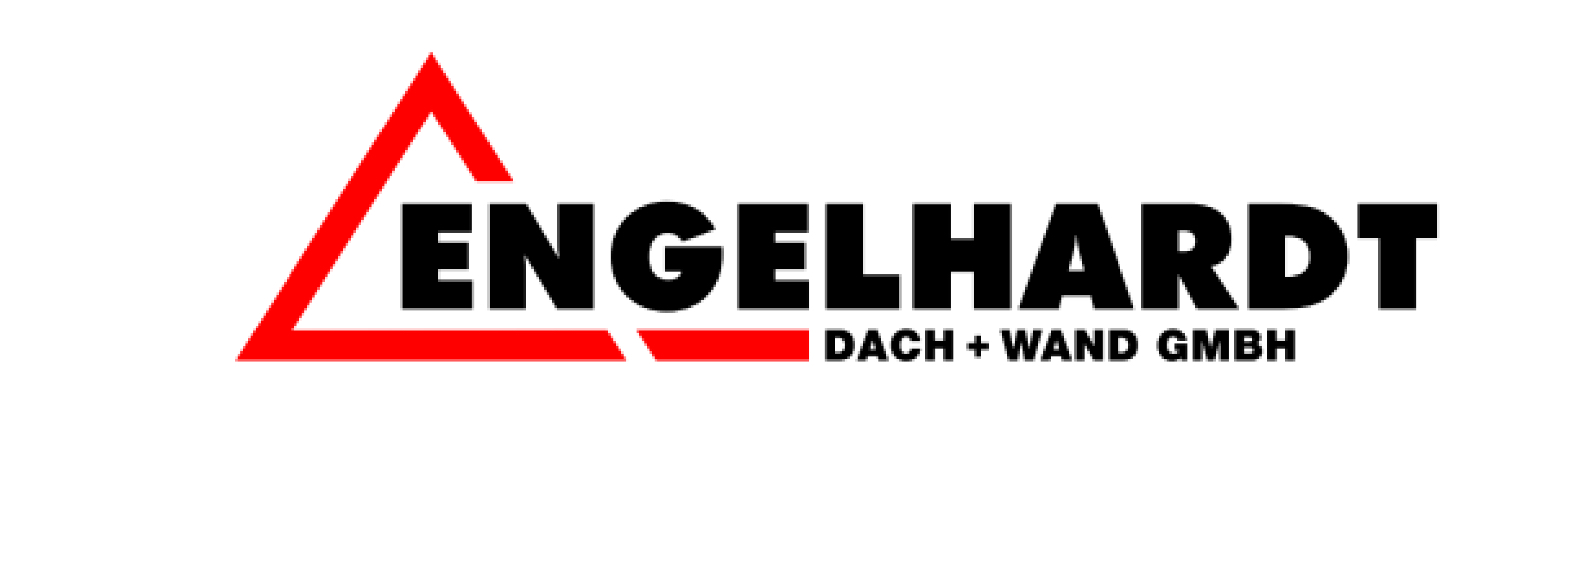 ➤ Engelhardt Dach + Wand GmbH 49661 Cloppenburg Öffnungszeiten | Adresse | Telefon 0